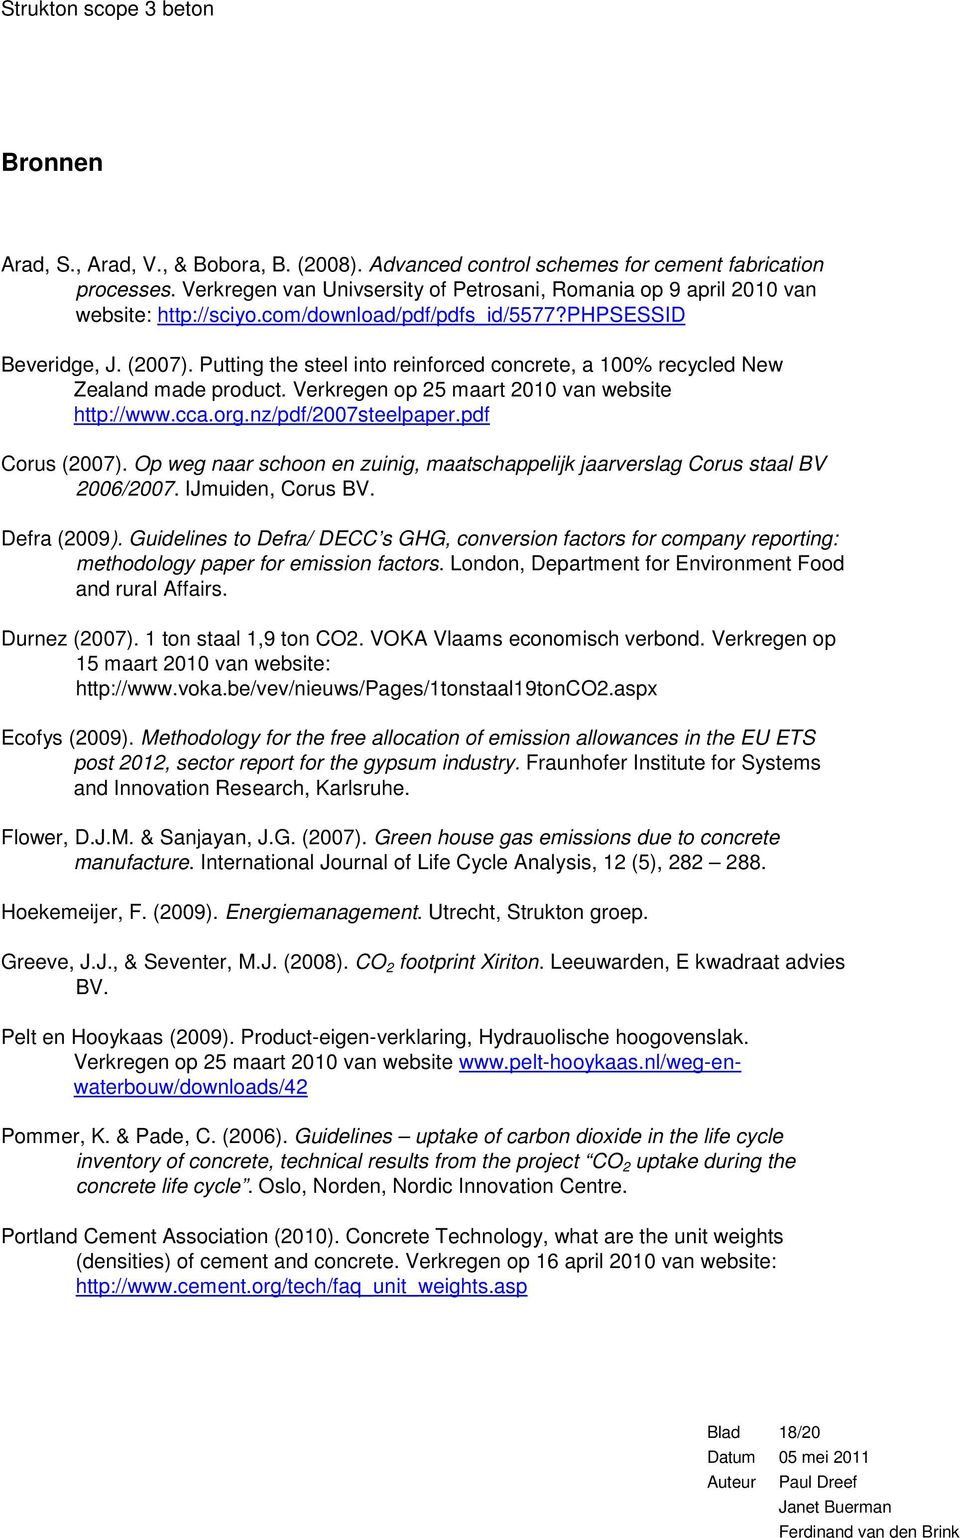 cca.org.nz/pdf/2007steelpaper.pdf Corus (2007). Op weg naar schoon en zuinig, maatschappelijk jaarverslag Corus staal BV 2006/2007. IJmuiden, Corus BV. Defra (2009).